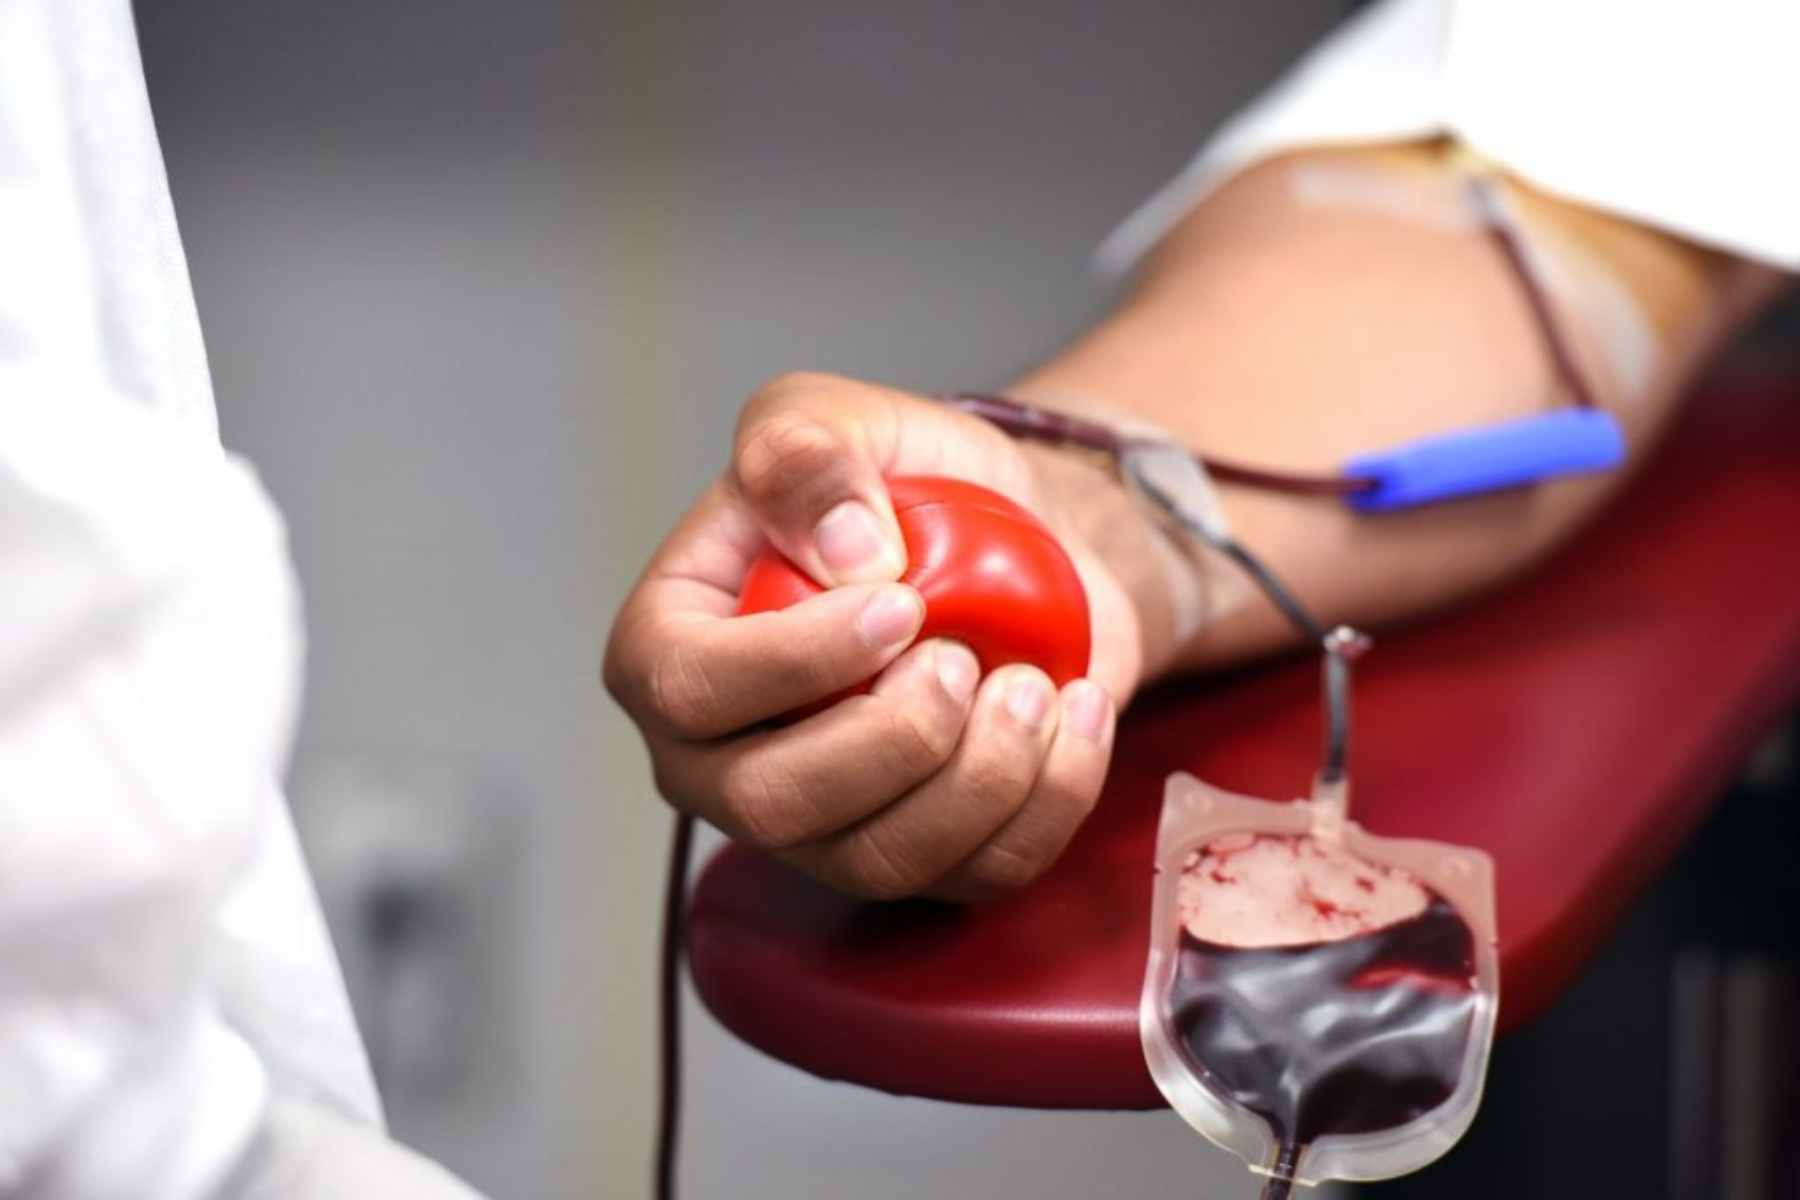 1η Εθελοντική Αιμοδοσία στη Δυτική Μάνη με 80 φιάλες αίματος